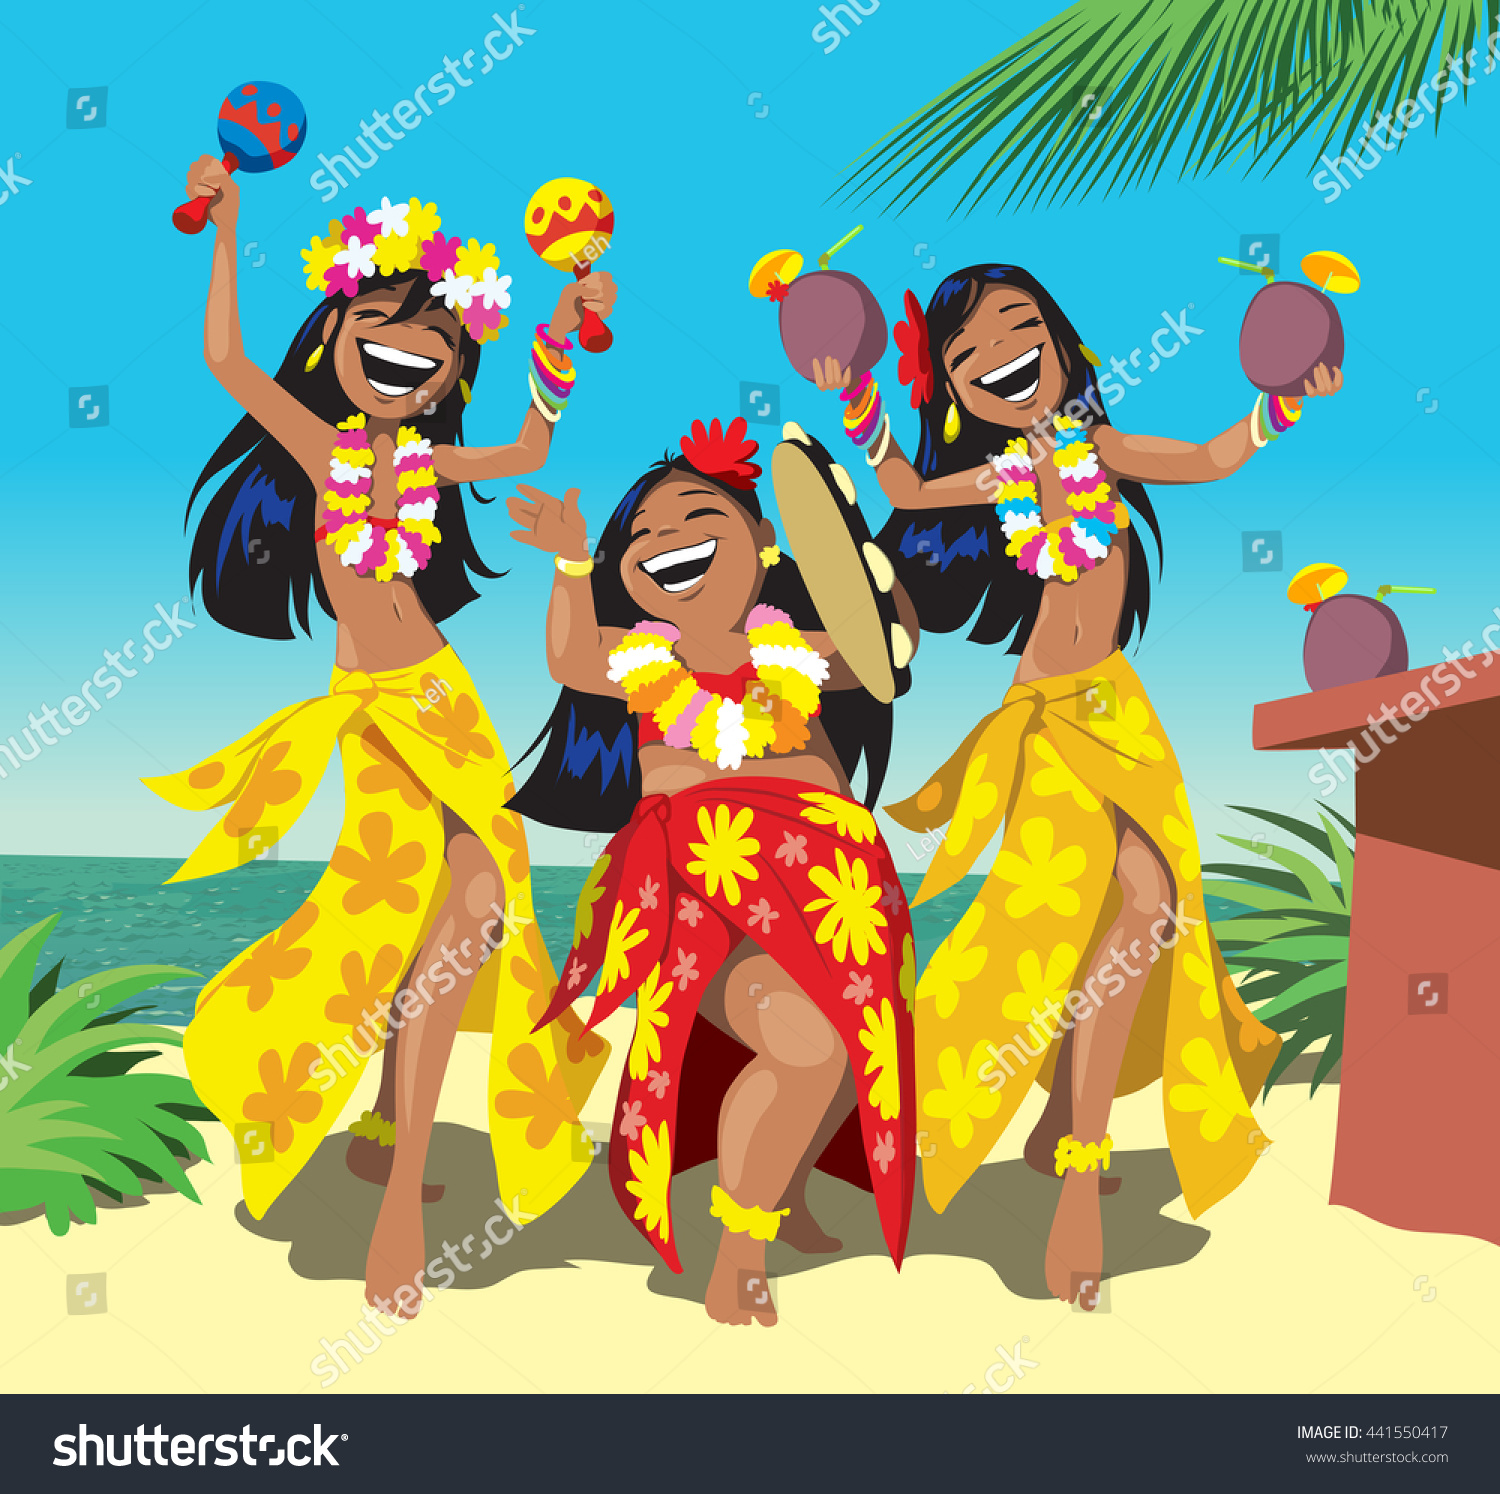 Aloha dance: Ñ�Ñ‚Ð¾ÐºÐ¾Ð²Ñ‹Ðµ Ð¸Ð·Ð¾Ð±Ñ€Ð°Ð¶ÐµÐ½Ð¸Ñ� Ð² HD Ð¸ Ð¼Ð¸Ð»Ð»Ð¸Ð¾Ð½Ñ‹ Ð´Ñ€ÑƒÐ³Ð¸Ñ… Ñ�Ñ‚Ð¾ÐºÐ¾Ð²Ñ‹Ñ… Ñ„Ð¾Ñ‚Ð¾Ð³Ñ€Ð°Ñ„Ð¸...